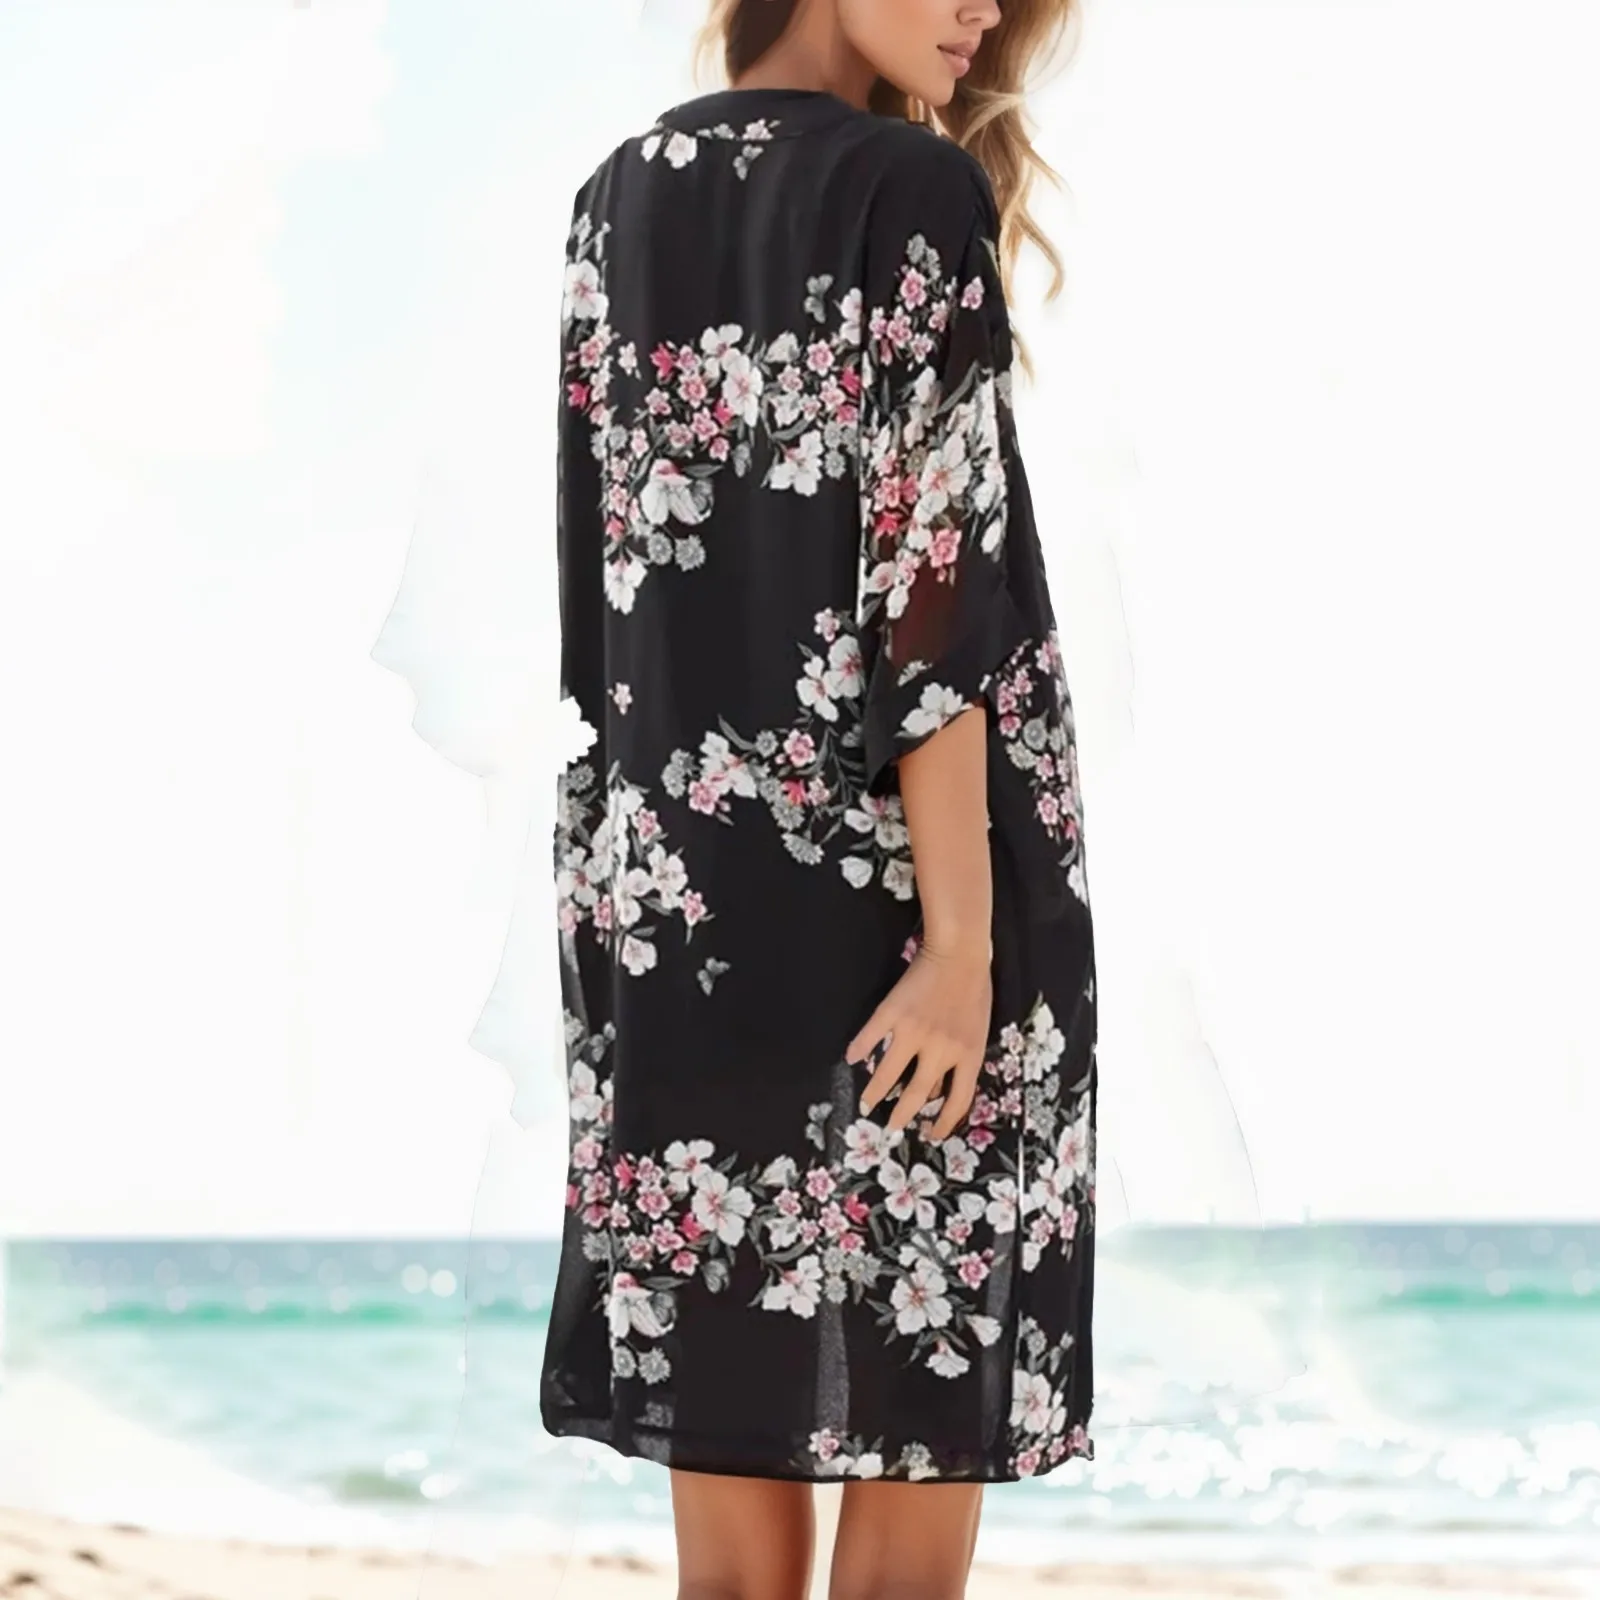 

Накидка для плавания, женская шифоновая блузка, семейная пляжная блузка с принтом листьев, шаль, свободная Гавайская верхняя одежда, блузка, пляжная одежда